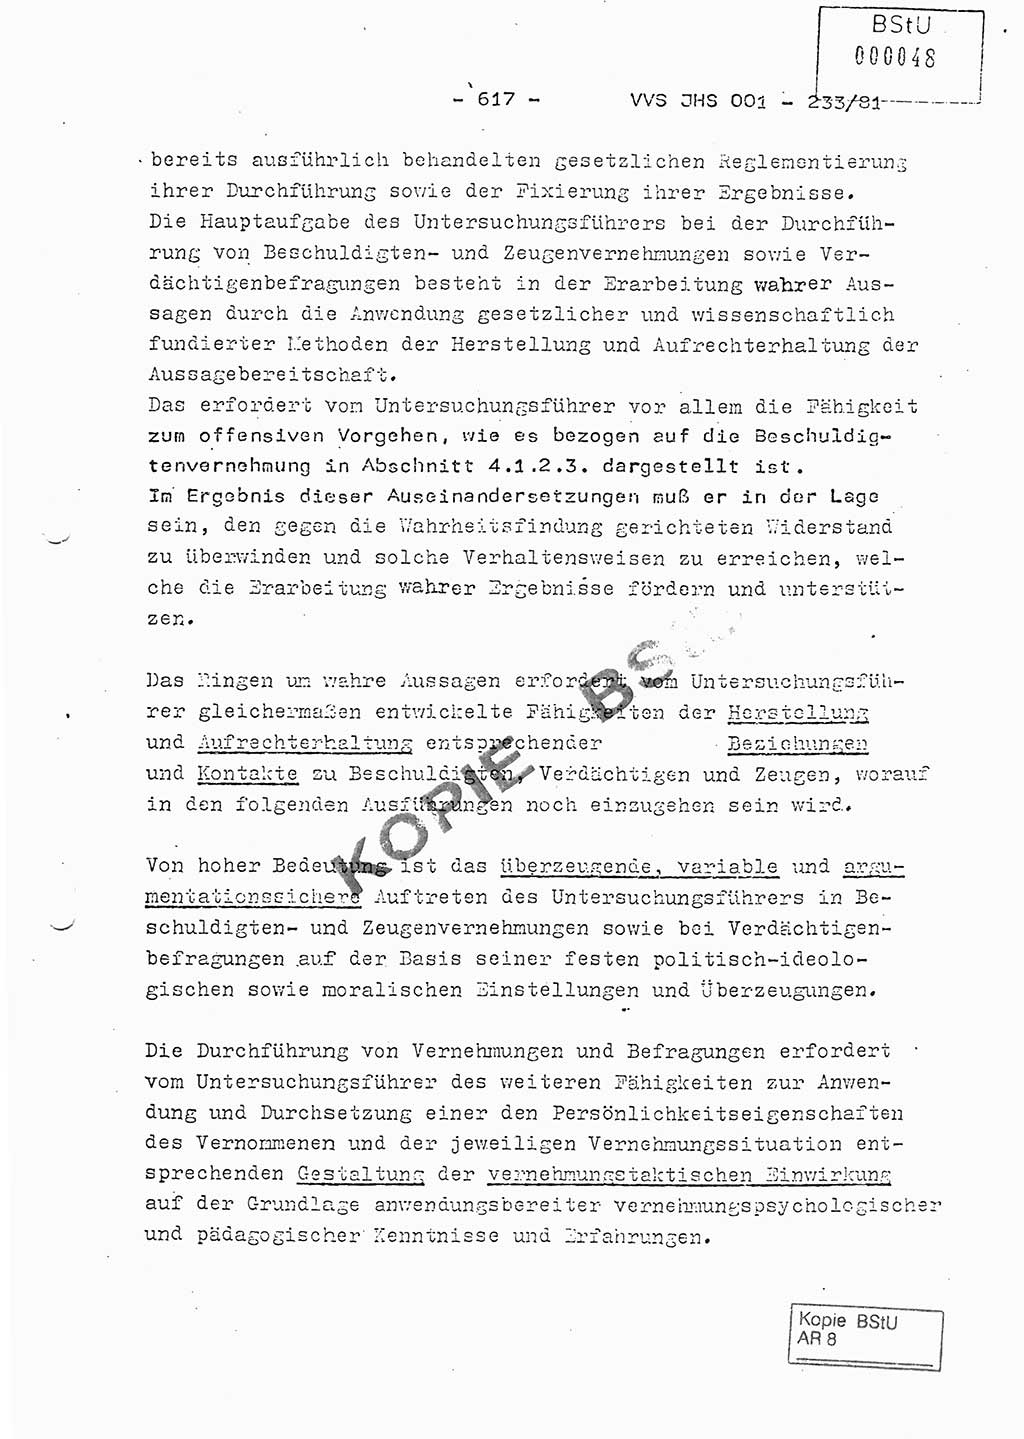 Dissertation Oberstleutnant Horst Zank (JHS), Oberstleutnant Dr. Karl-Heinz Knoblauch (JHS), Oberstleutnant Gustav-Adolf Kowalewski (HA Ⅸ), Oberstleutnant Wolfgang Plötner (HA Ⅸ), Ministerium für Staatssicherheit (MfS) [Deutsche Demokratische Republik (DDR)], Juristische Hochschule (JHS), Vertrauliche Verschlußsache (VVS) o001-233/81, Potsdam 1981, Blatt 617 (Diss. MfS DDR JHS VVS o001-233/81 1981, Bl. 617)